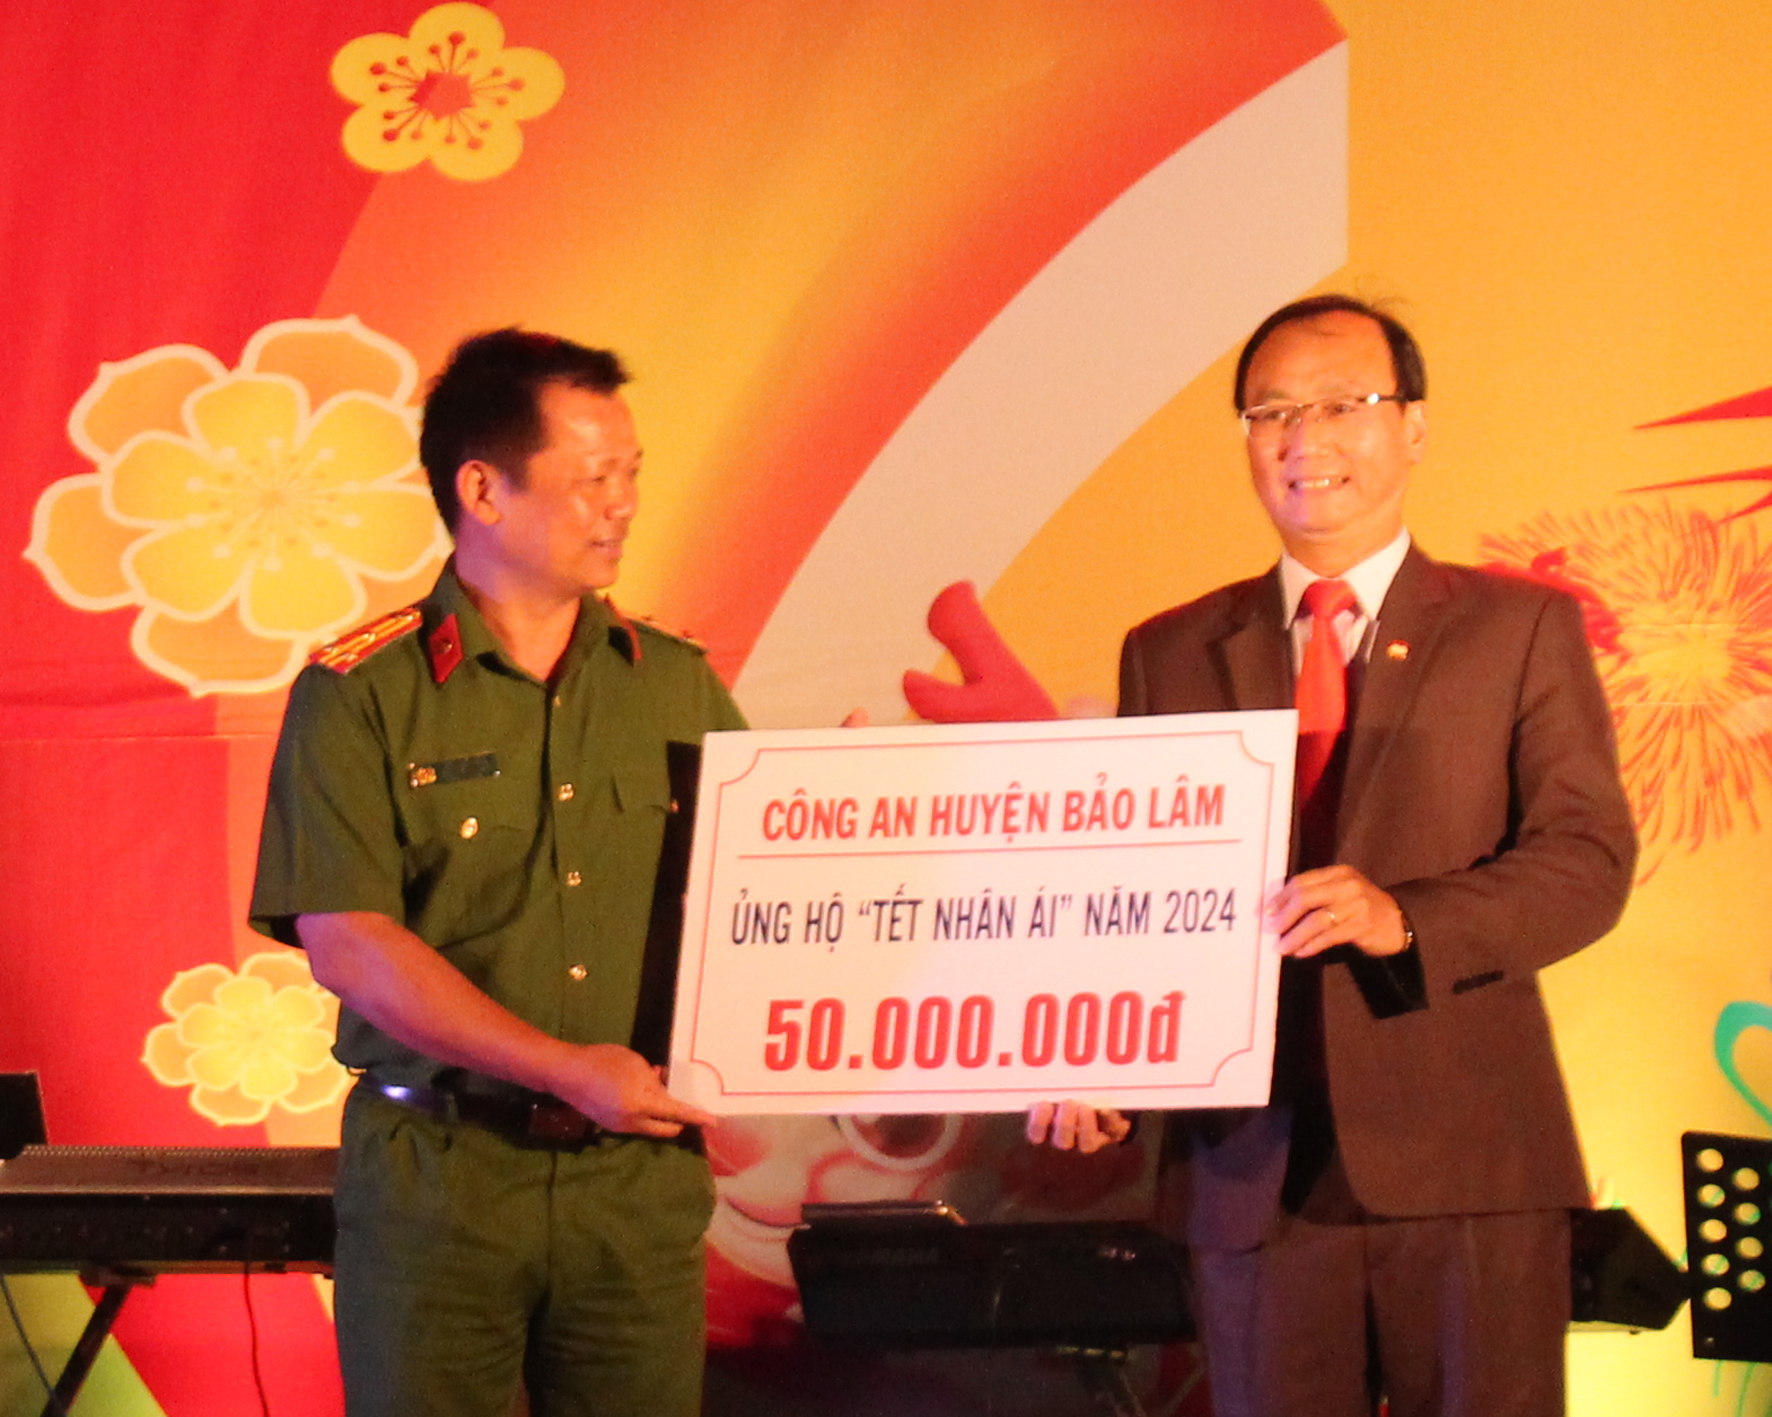 Chủ tịch Ủy ban Mặt trận Tổ quốc Việt Nam huyện Bảo Lâm Bùi Xuân Quý nhận tiền ủng hộ Tết nhân ái